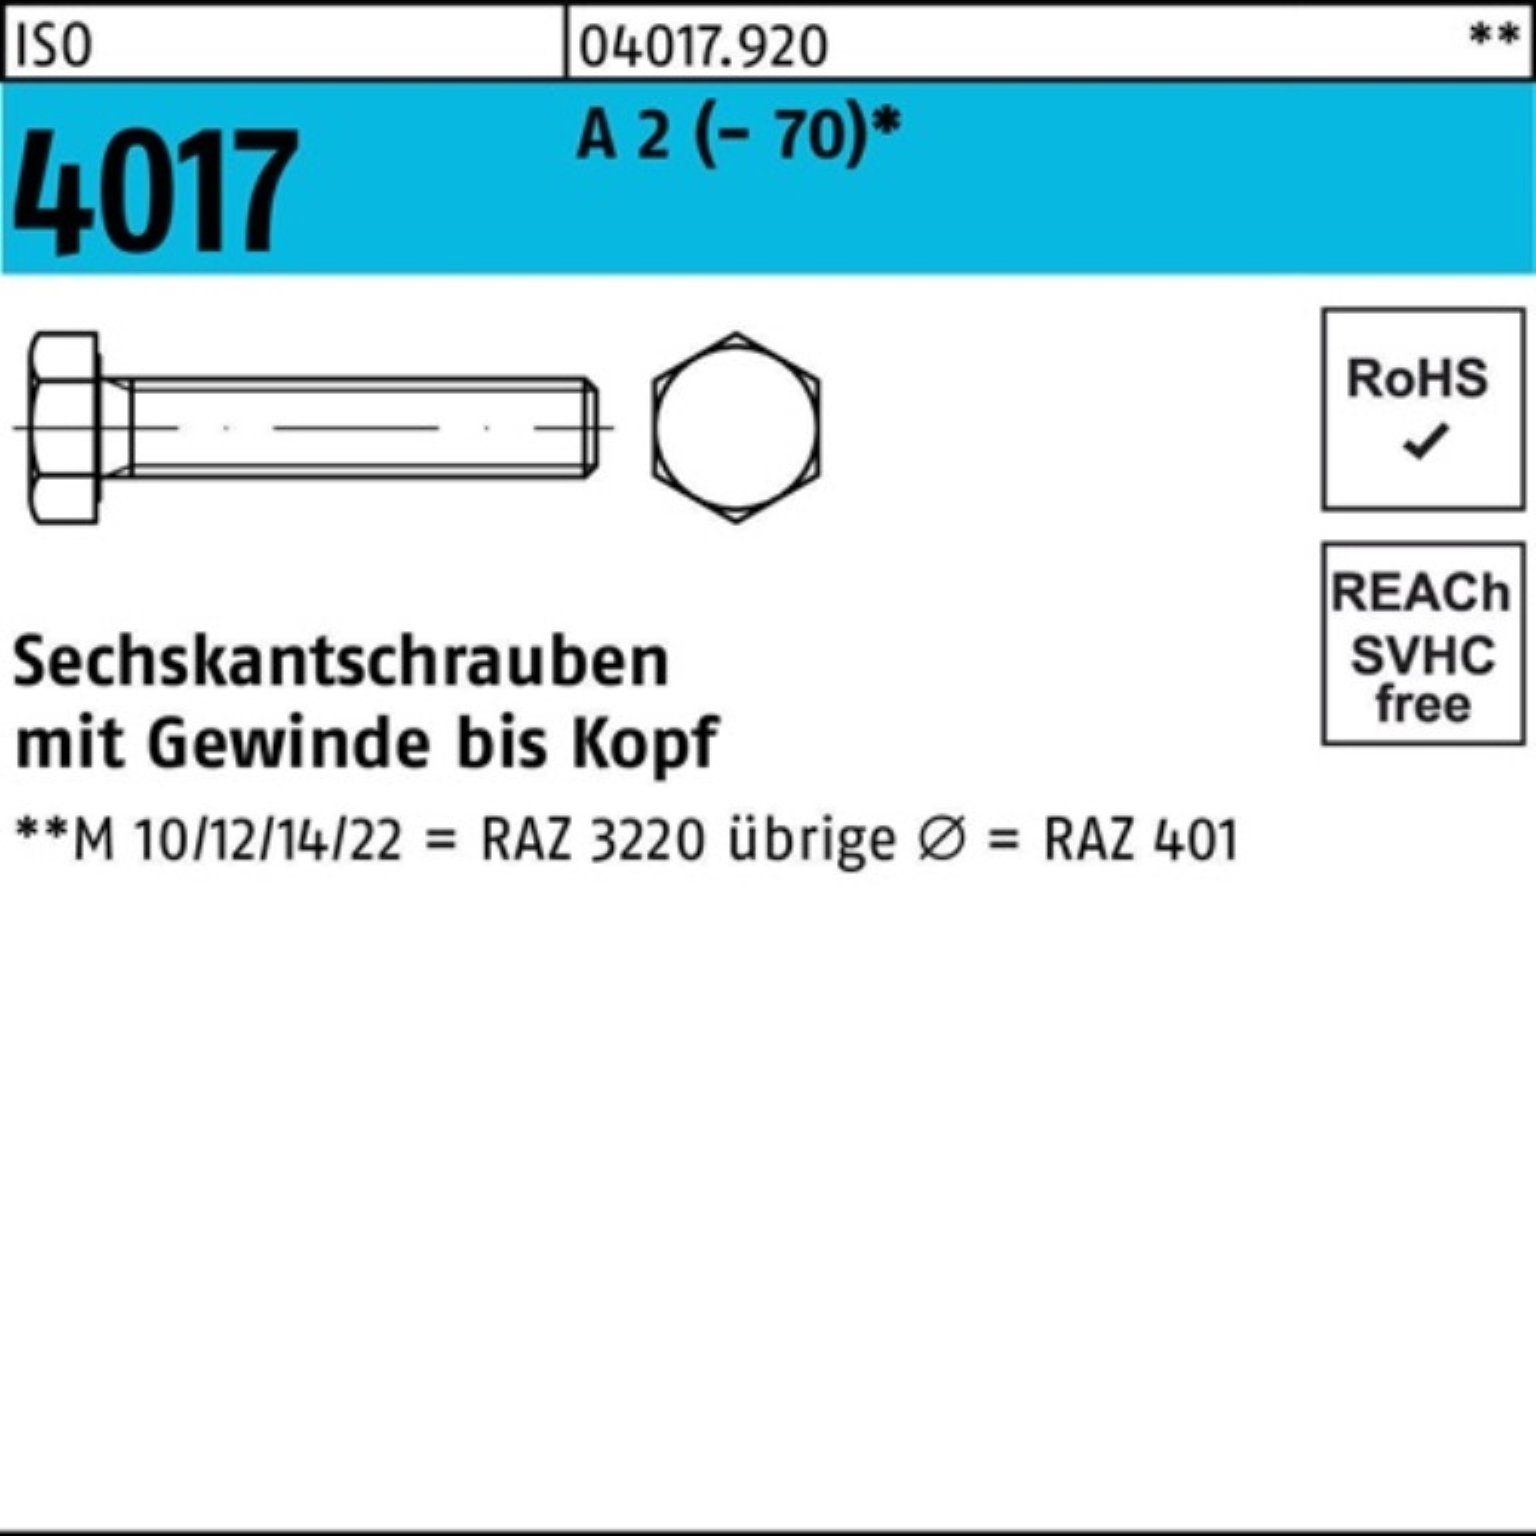 Bufab Sechskantschraube 100er Pack Sechskantschraube ISO 4017 VG M30x 150 A 2 (70) 1 Stück